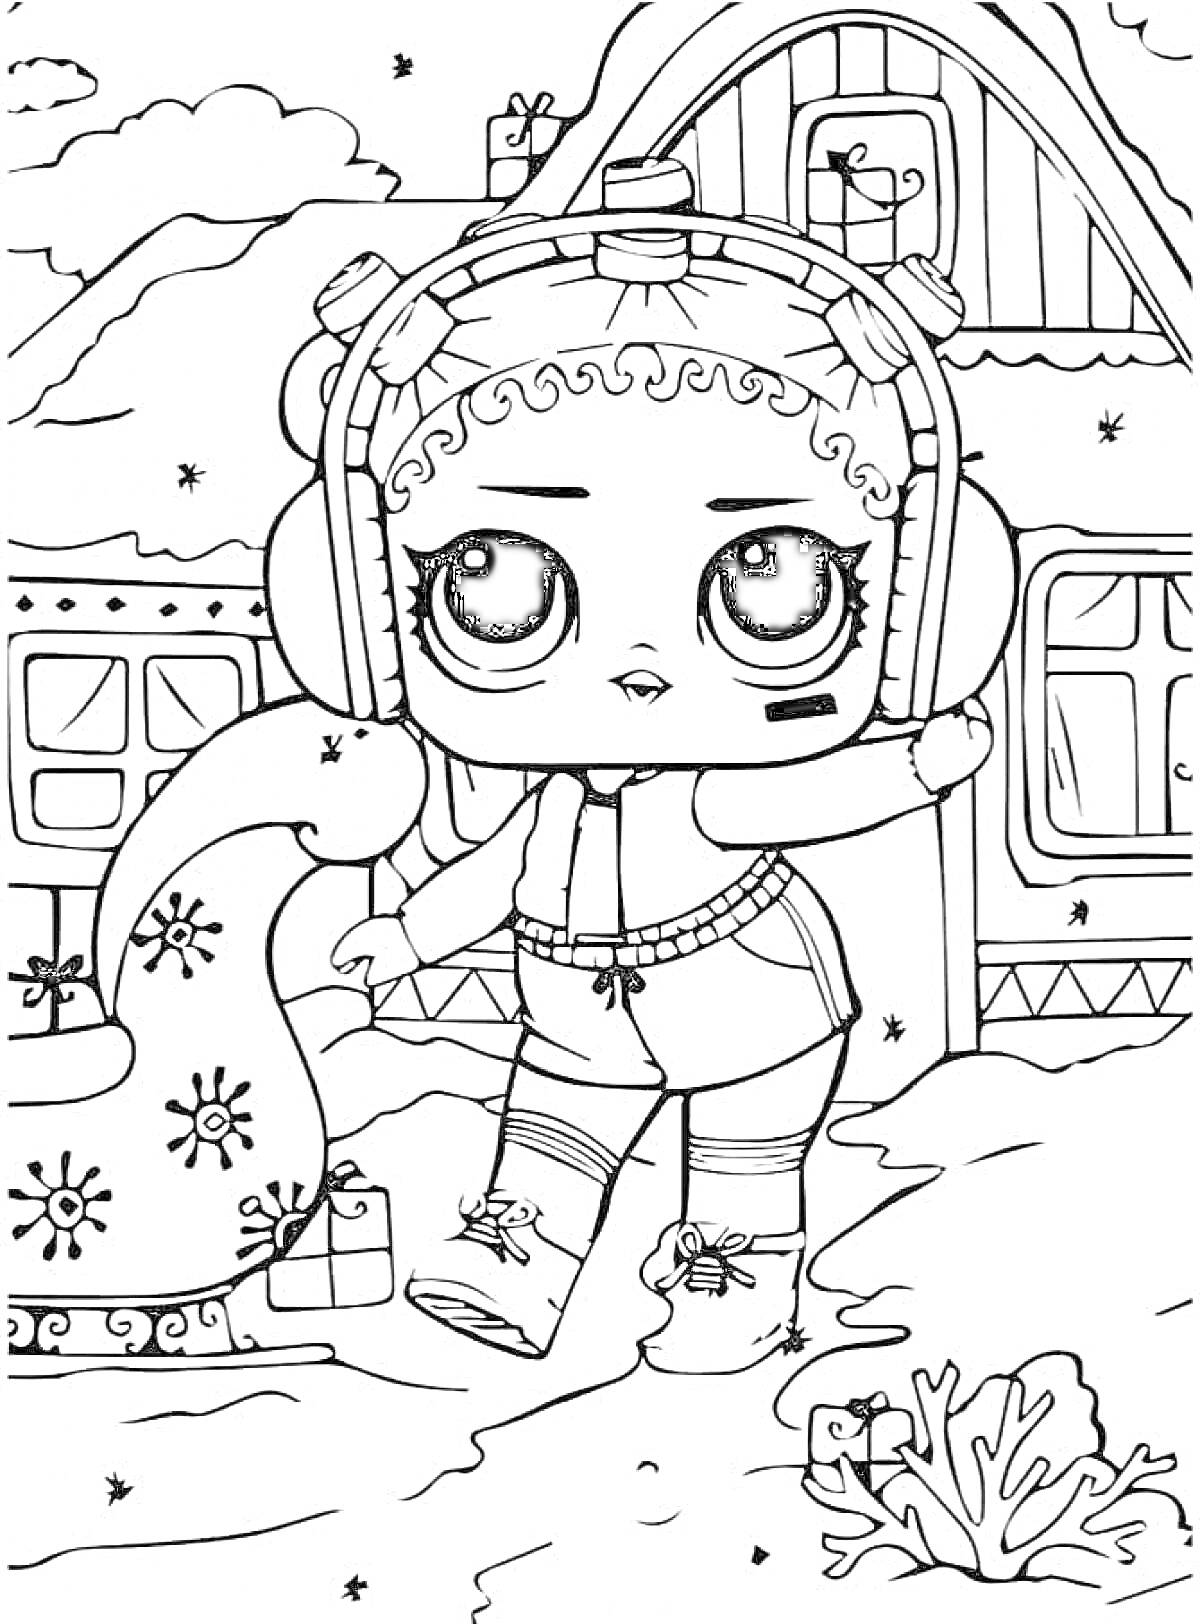 Раскраска ЛОЛ кукла с крупными глазами в наушниках и шарфе, домик с подарком и окнами, заснеженный ландшафт